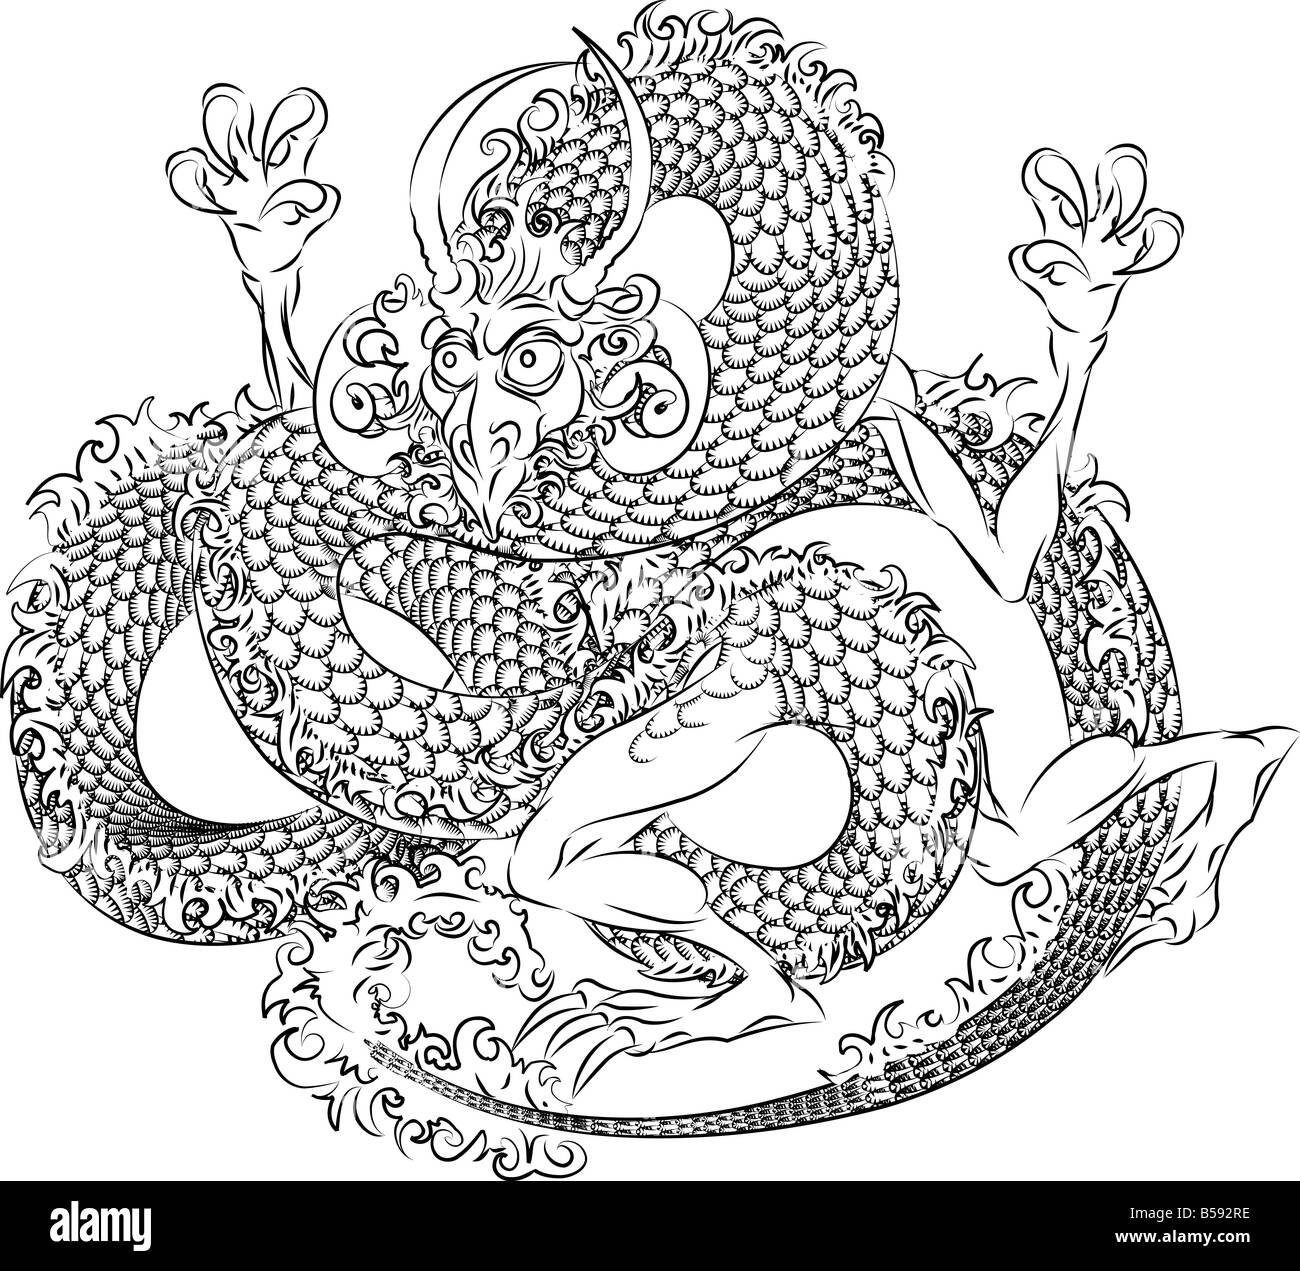 Illustration de dragon japonais noir sur fond blanc Banque D'Images